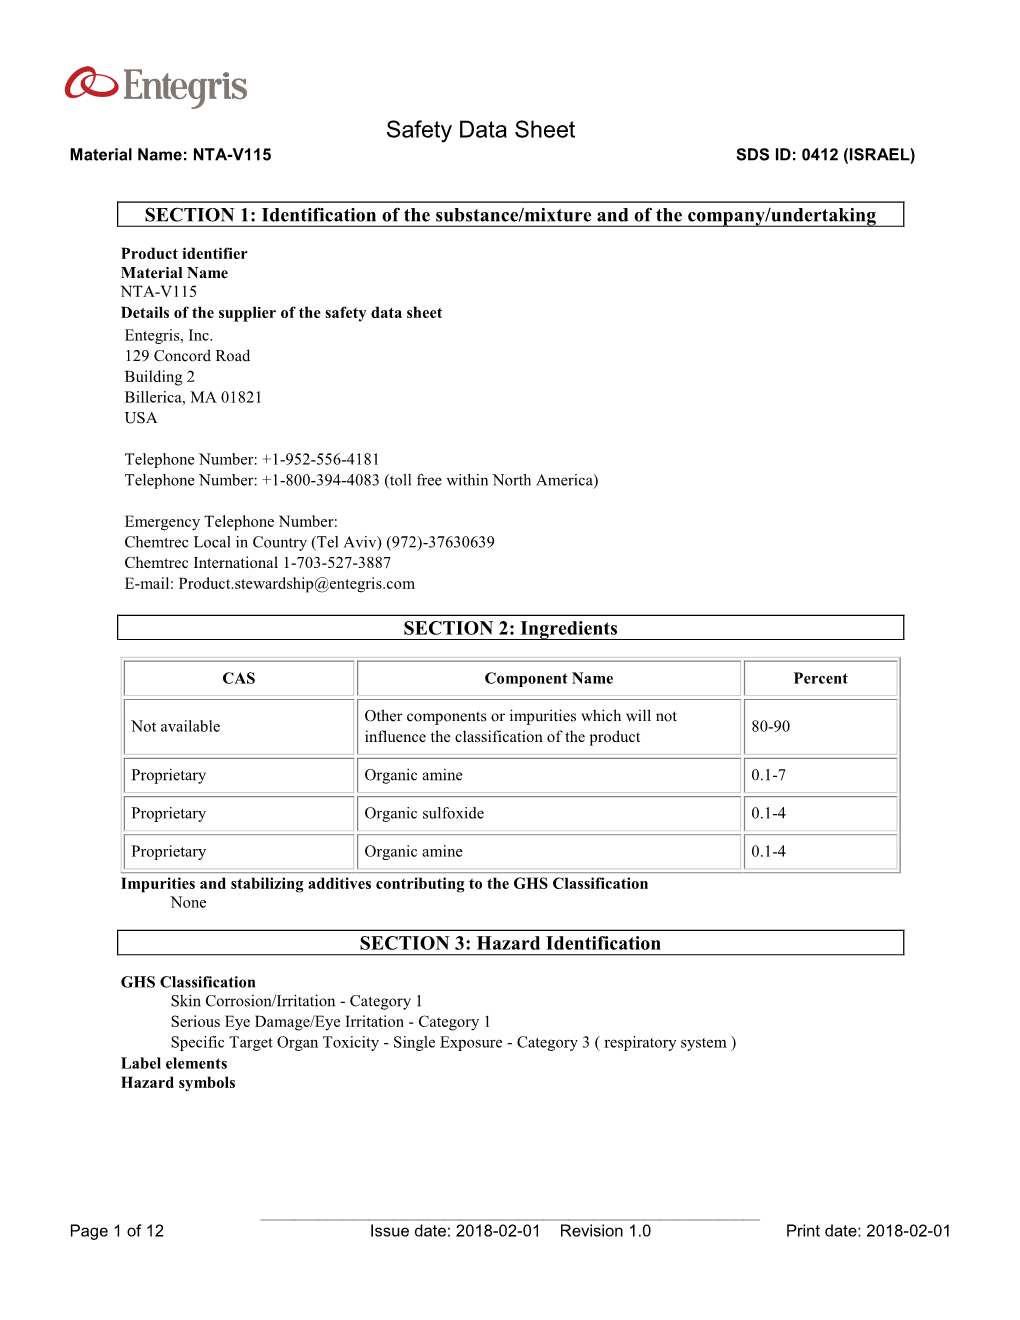 Safety Data Sheet Material Name: NTA-V115 SDS ID: 0412 (ISRAEL)